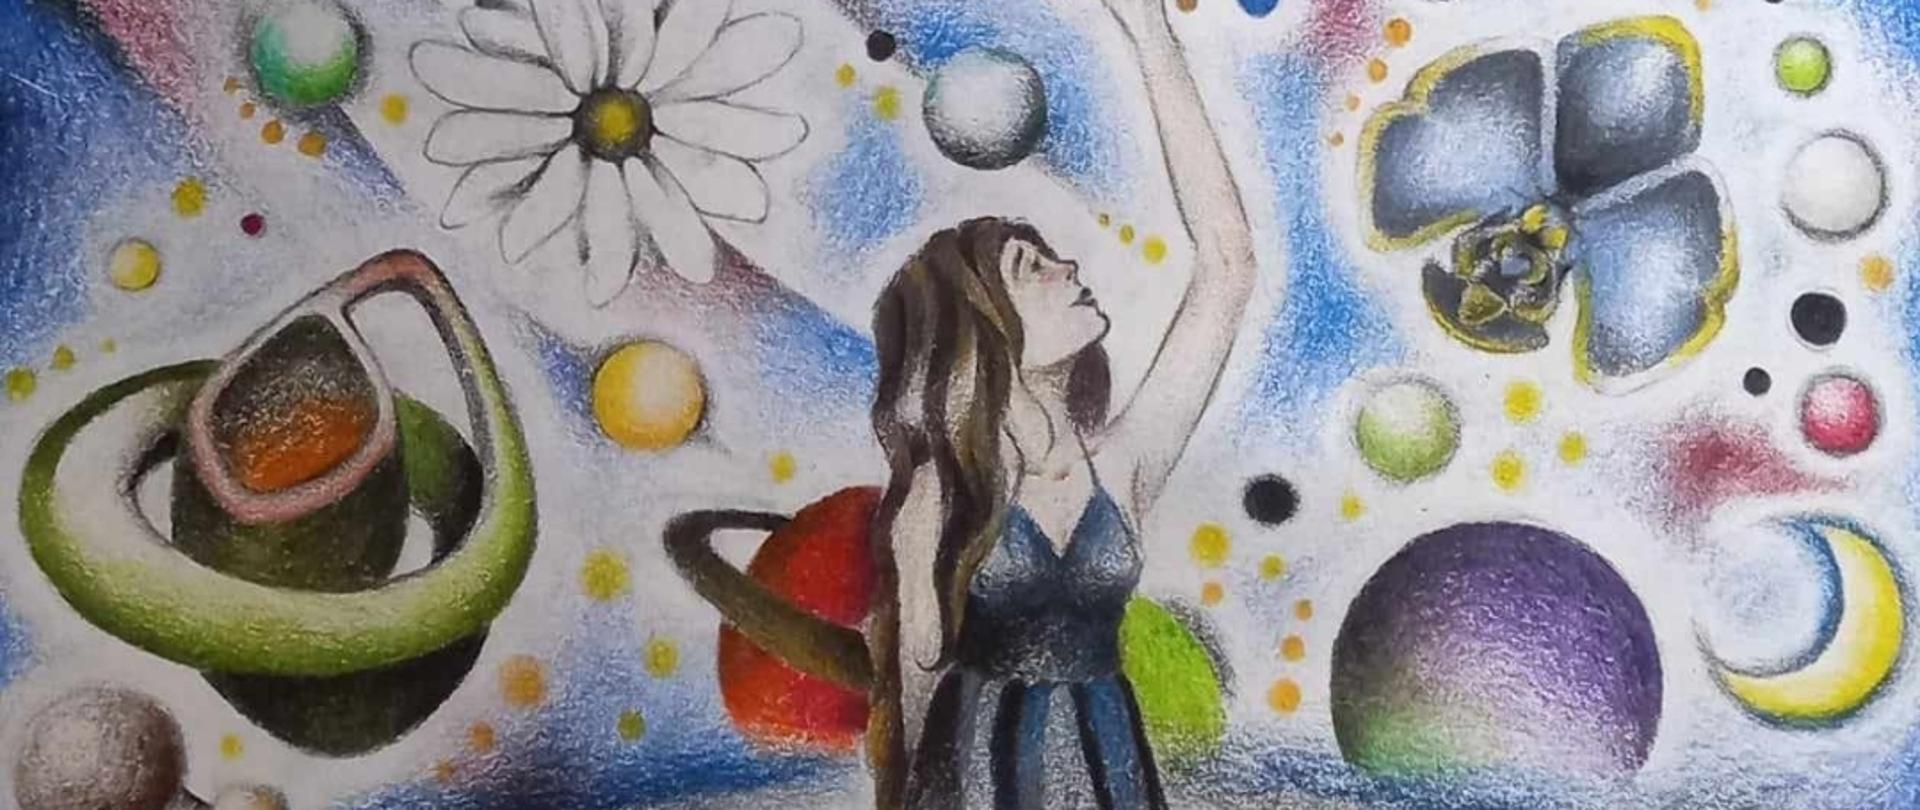 Obraz przedstawia dziewczynę sięgającą po kwiat słonecznika, dziewczyna wyrasta z głowy u dołu kompozycji, stoi na tle fantazyjnego nieba pełnego planet , kwiatów i księzyców.
